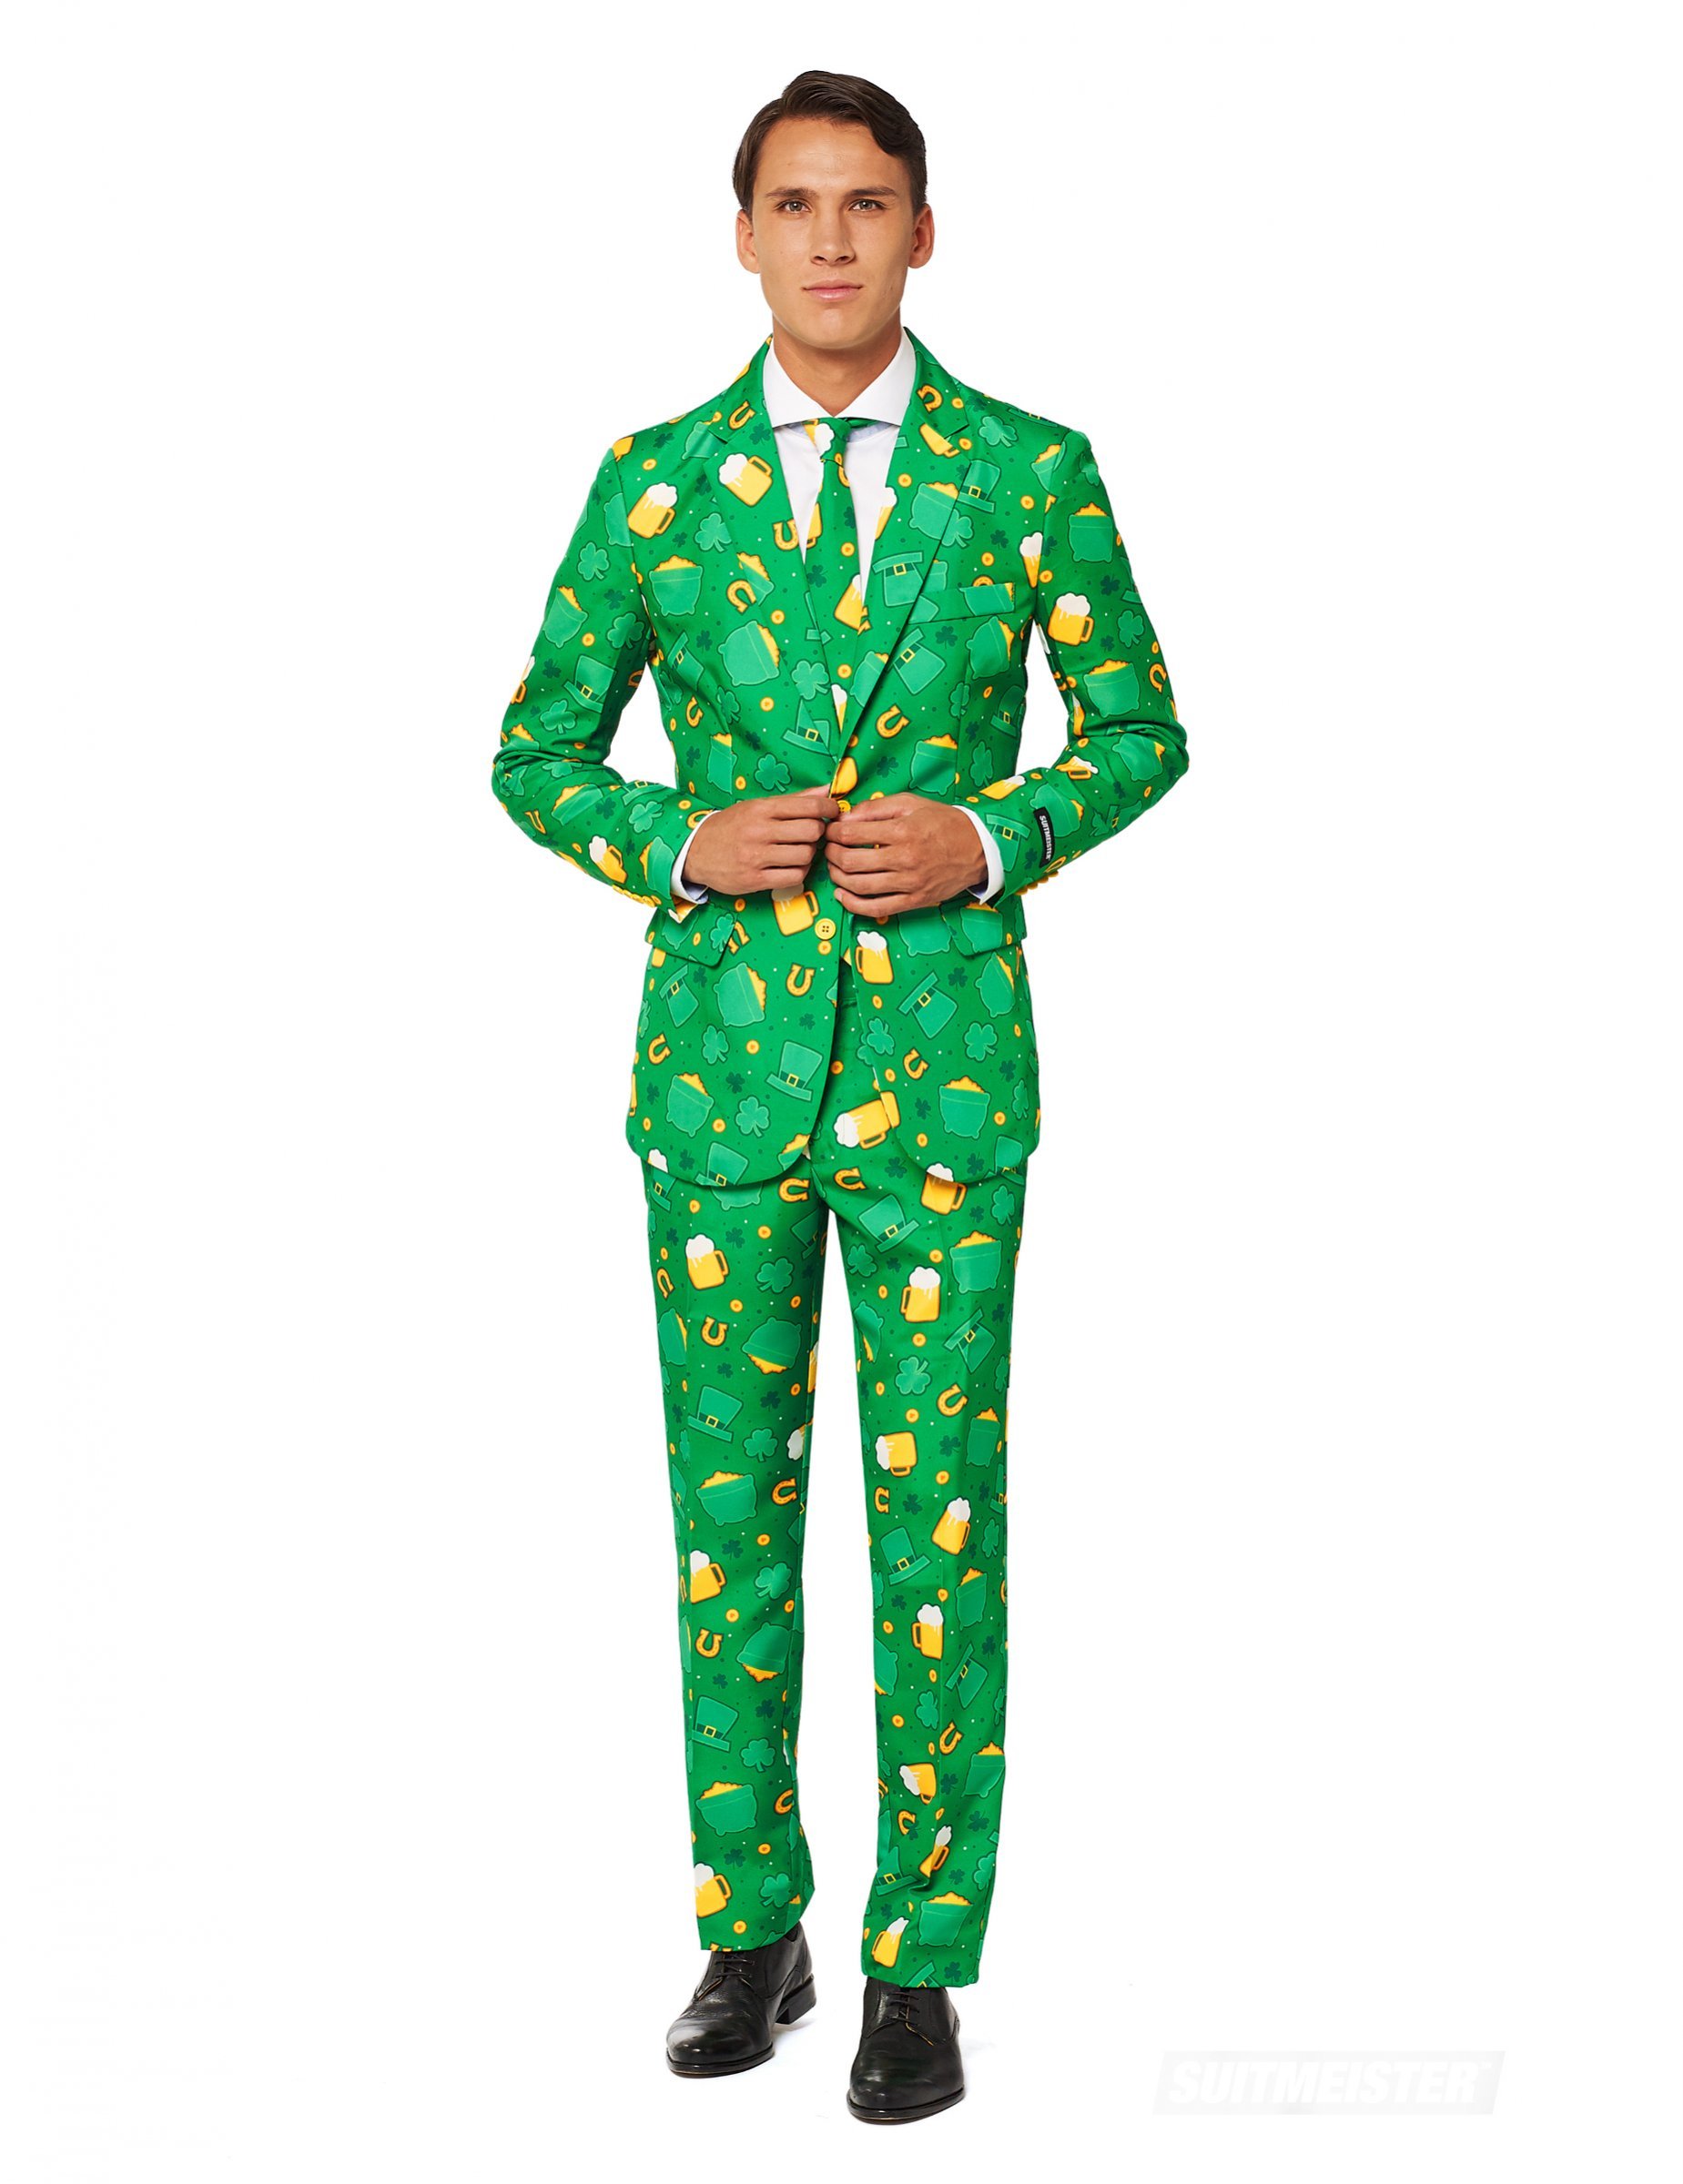 Suitmeister Mr. St. Patrick Herrenanzug grün-gelb-weiss von OPPOSUITS